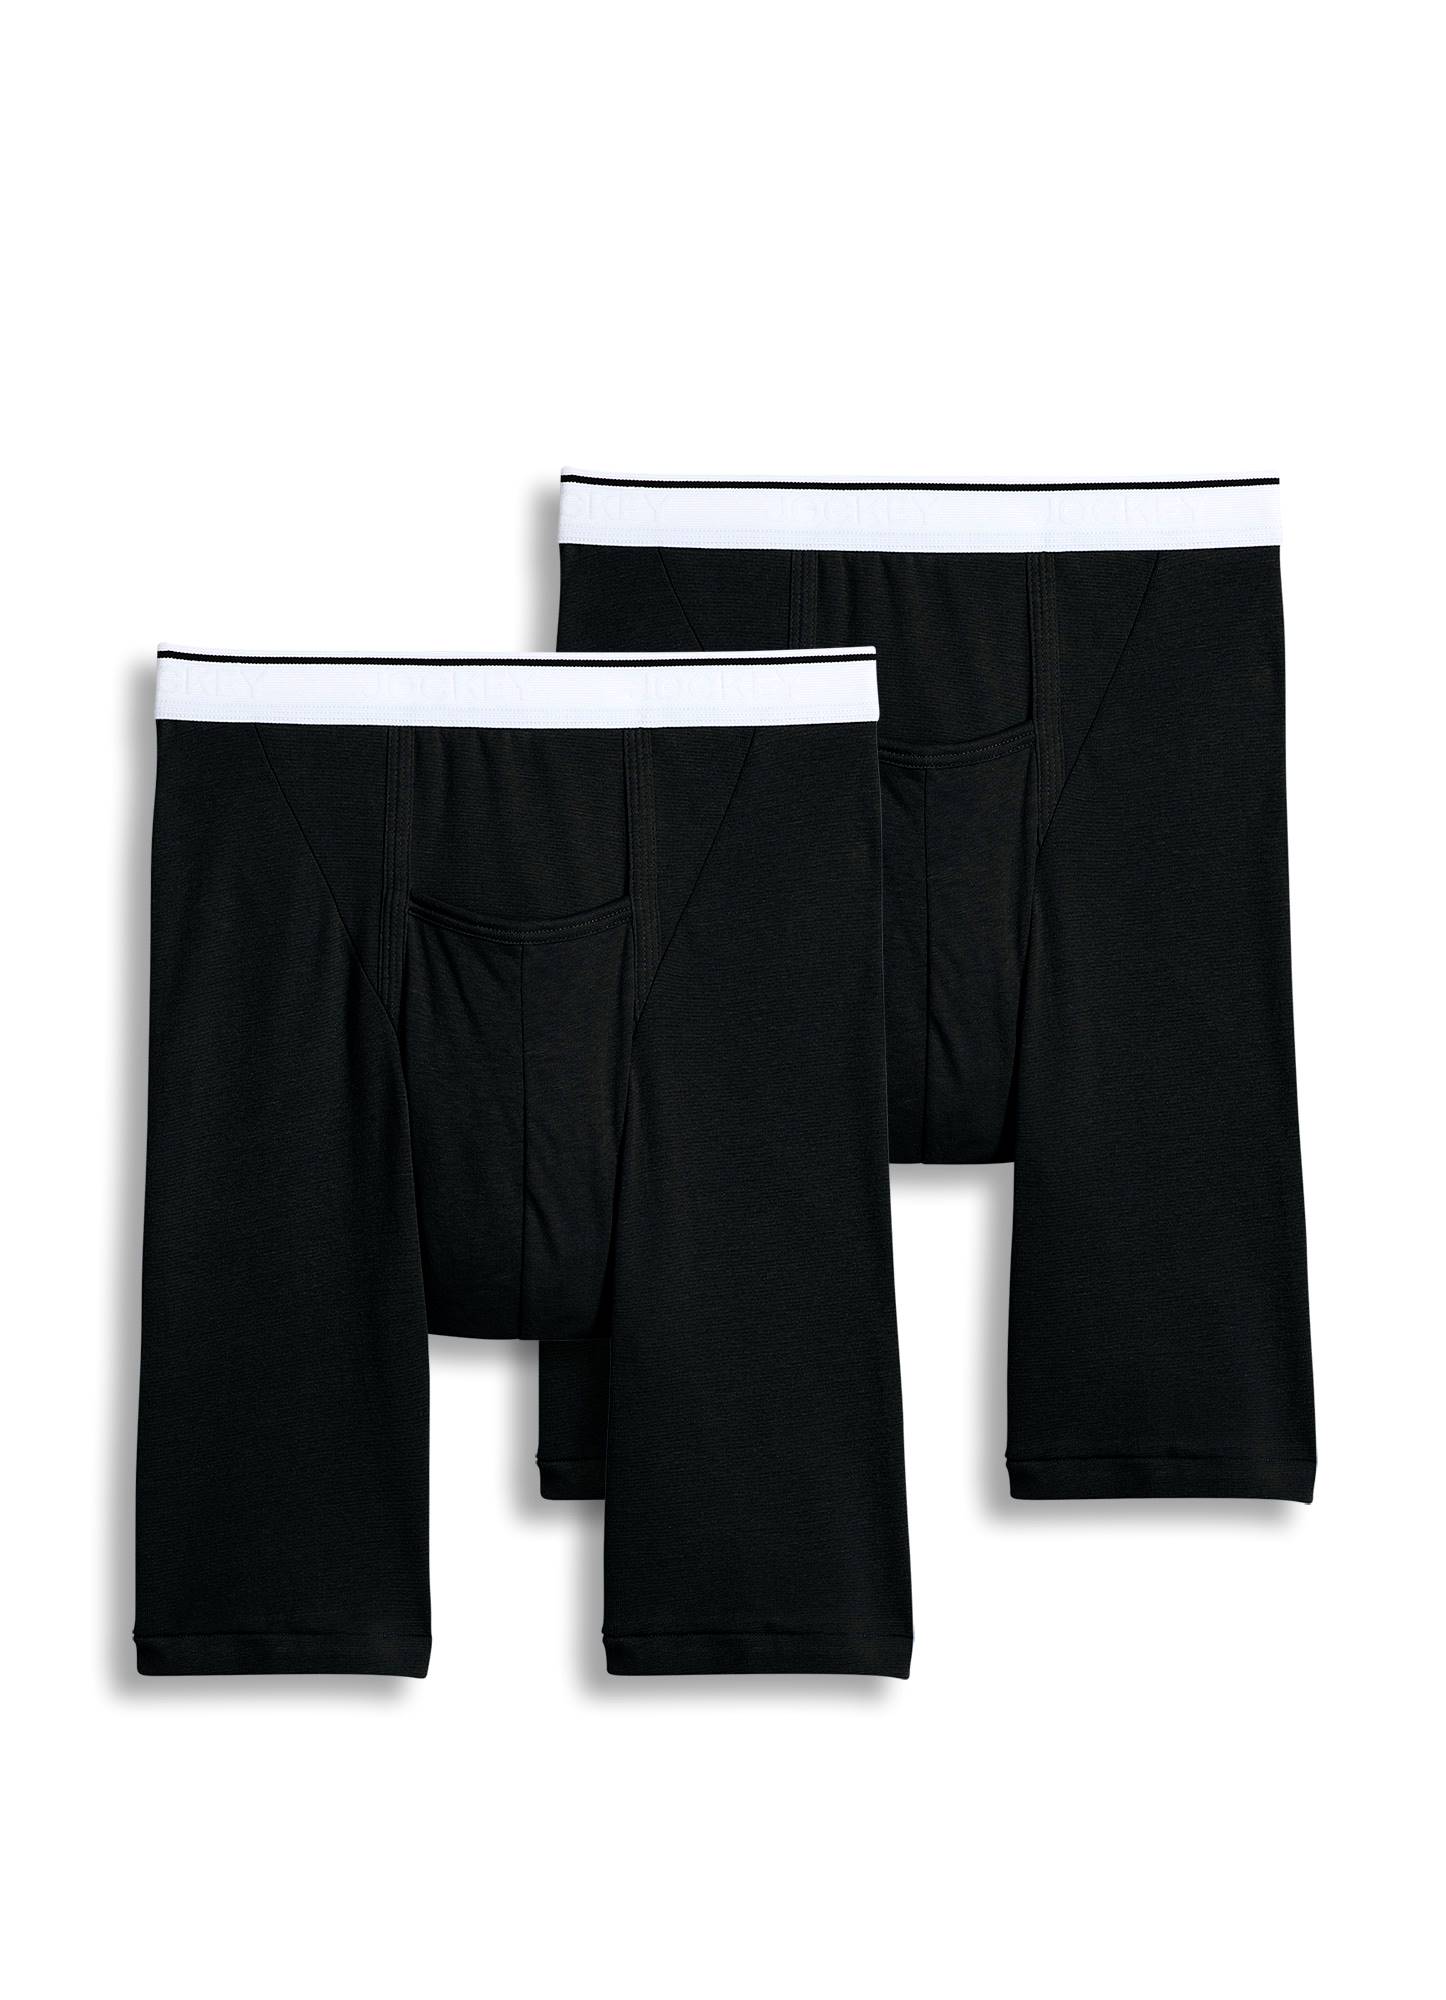 Jockey Mens Pouch Midway Brief 2 Pack Underwear Midway Briefs Cotton 2031